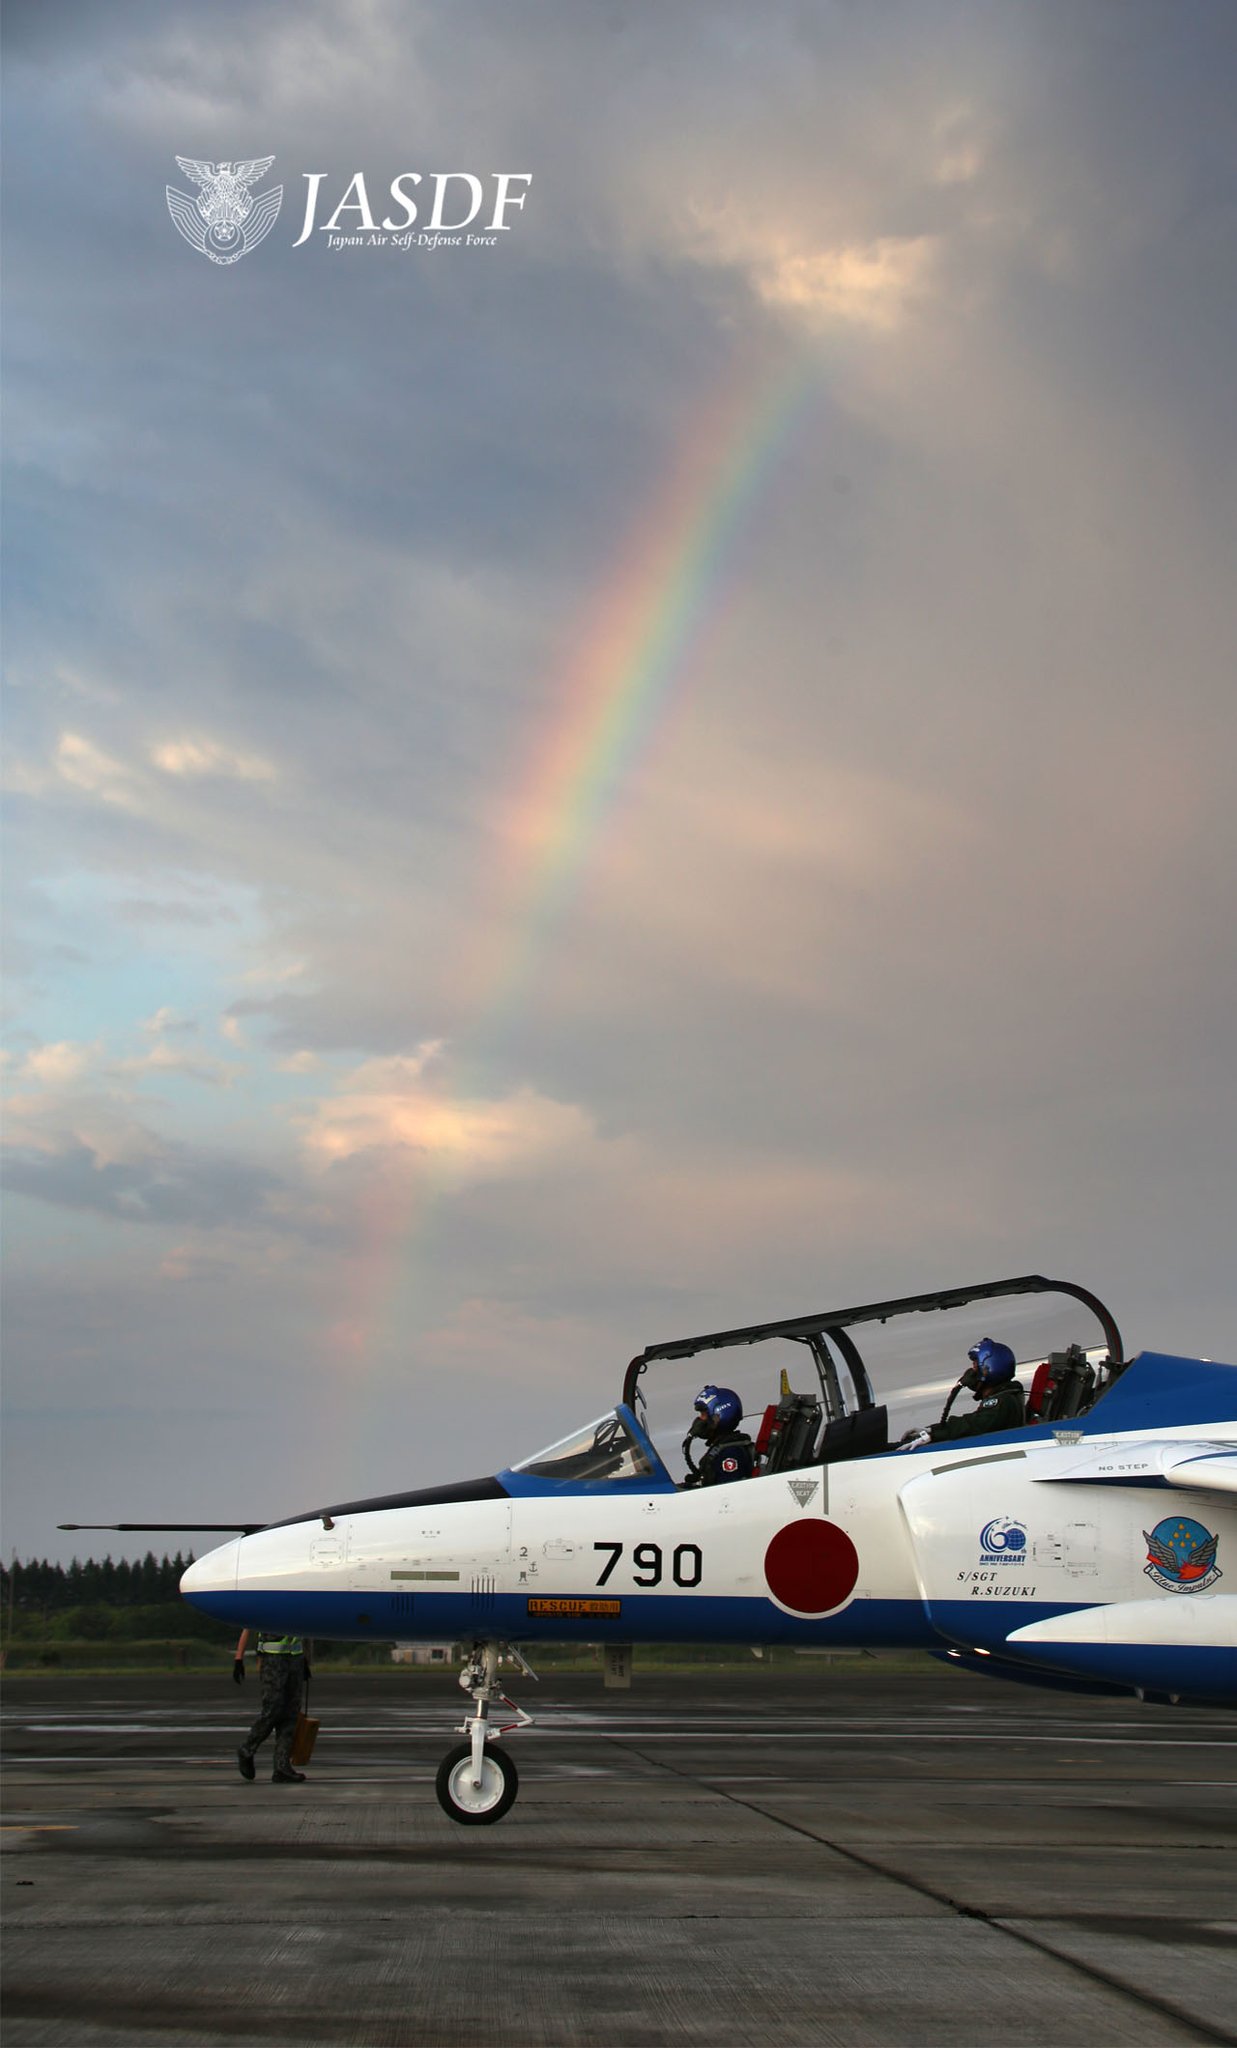 防衛省 航空自衛隊 空幕広報室 です 虹 をバックにブルーインパルスの壁紙 東から 雨雲よけて 入間基地 空には虹が お出迎え ブルーと虹が 幸せ運ぶ 見るたび気分 上がるかも 空自 ブルーインパルス 松島基地 壁紙 待ち受け